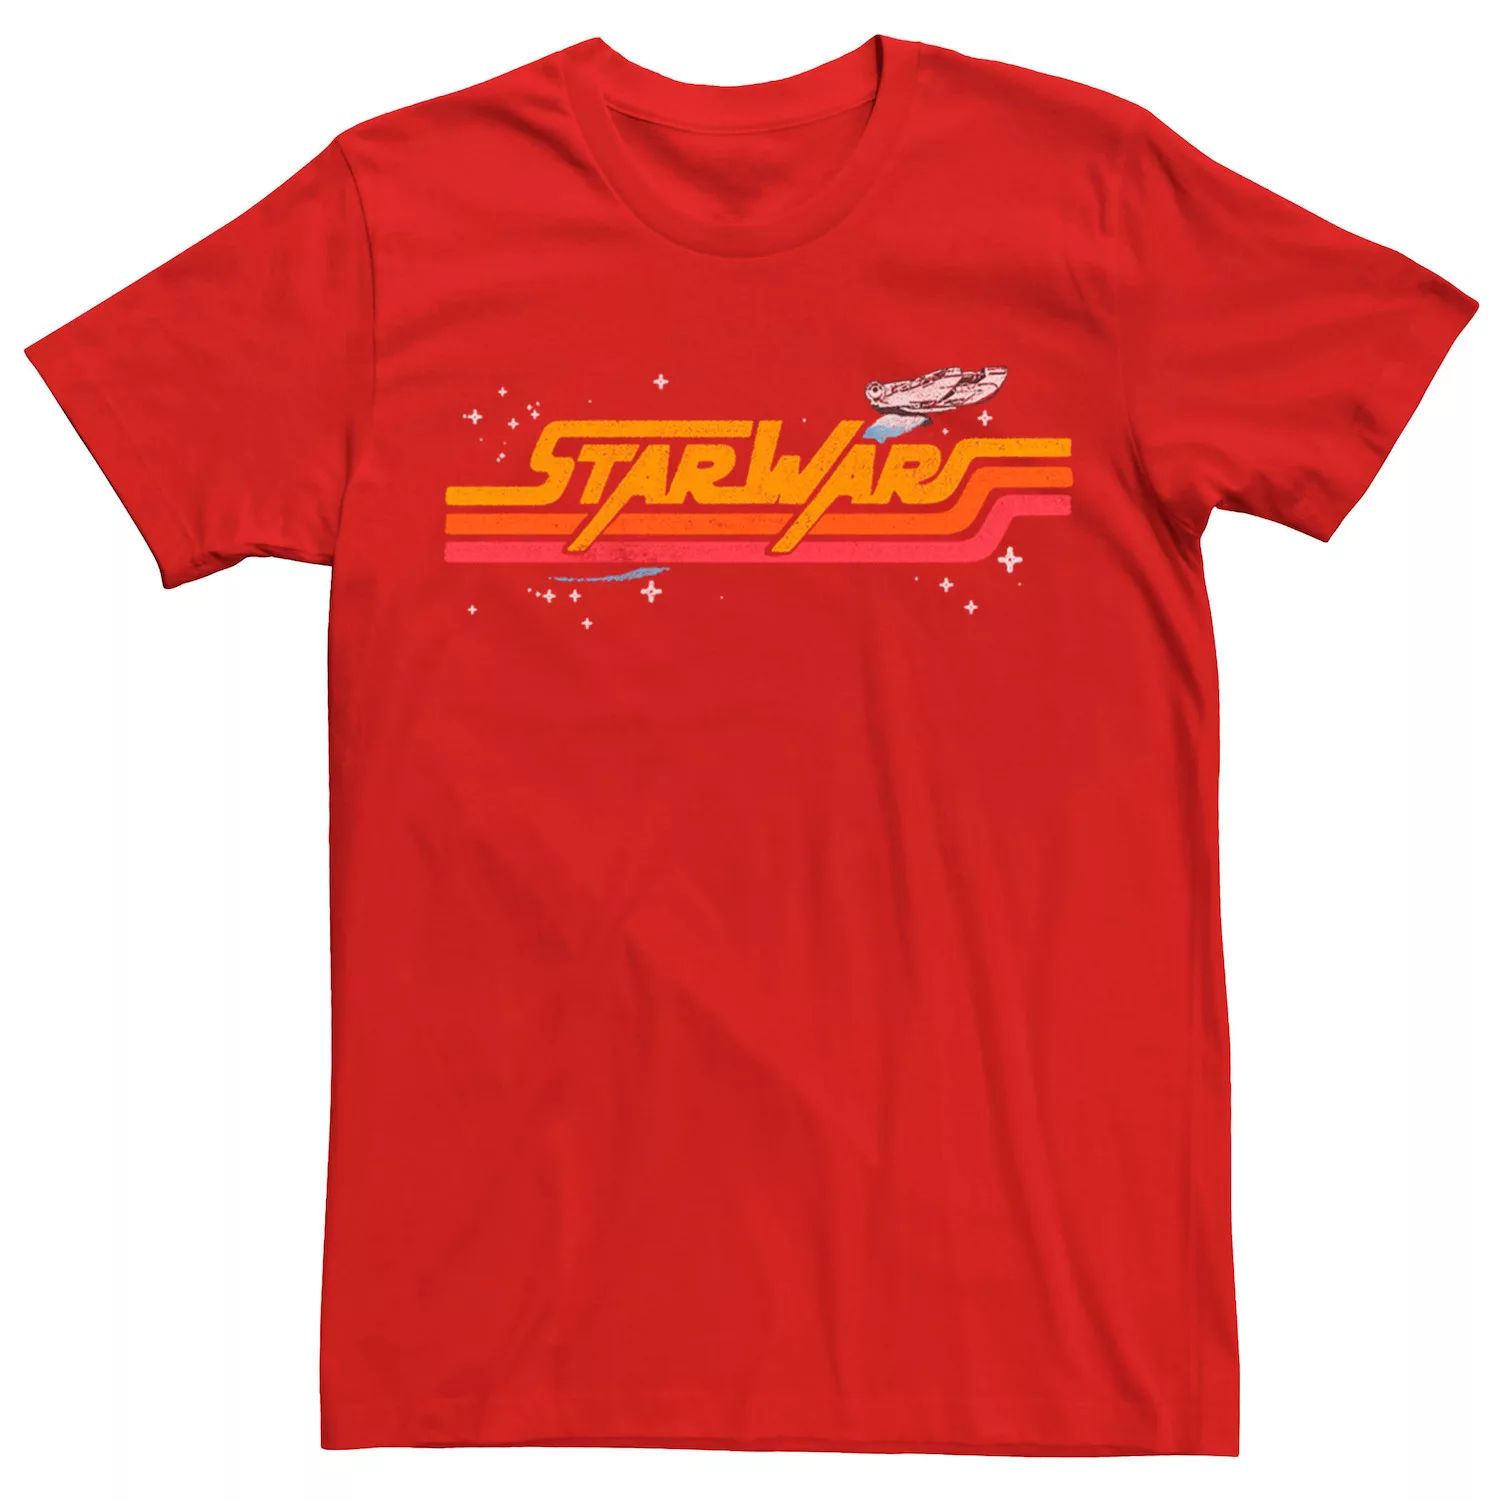 Мужская футболка с логотипом в стиле ретро «Звездные войны: Сокол тысячелетия» Star Wars, красный мужская футболка с логотипом комиксов звездные войны сокол тысячелетия star wars